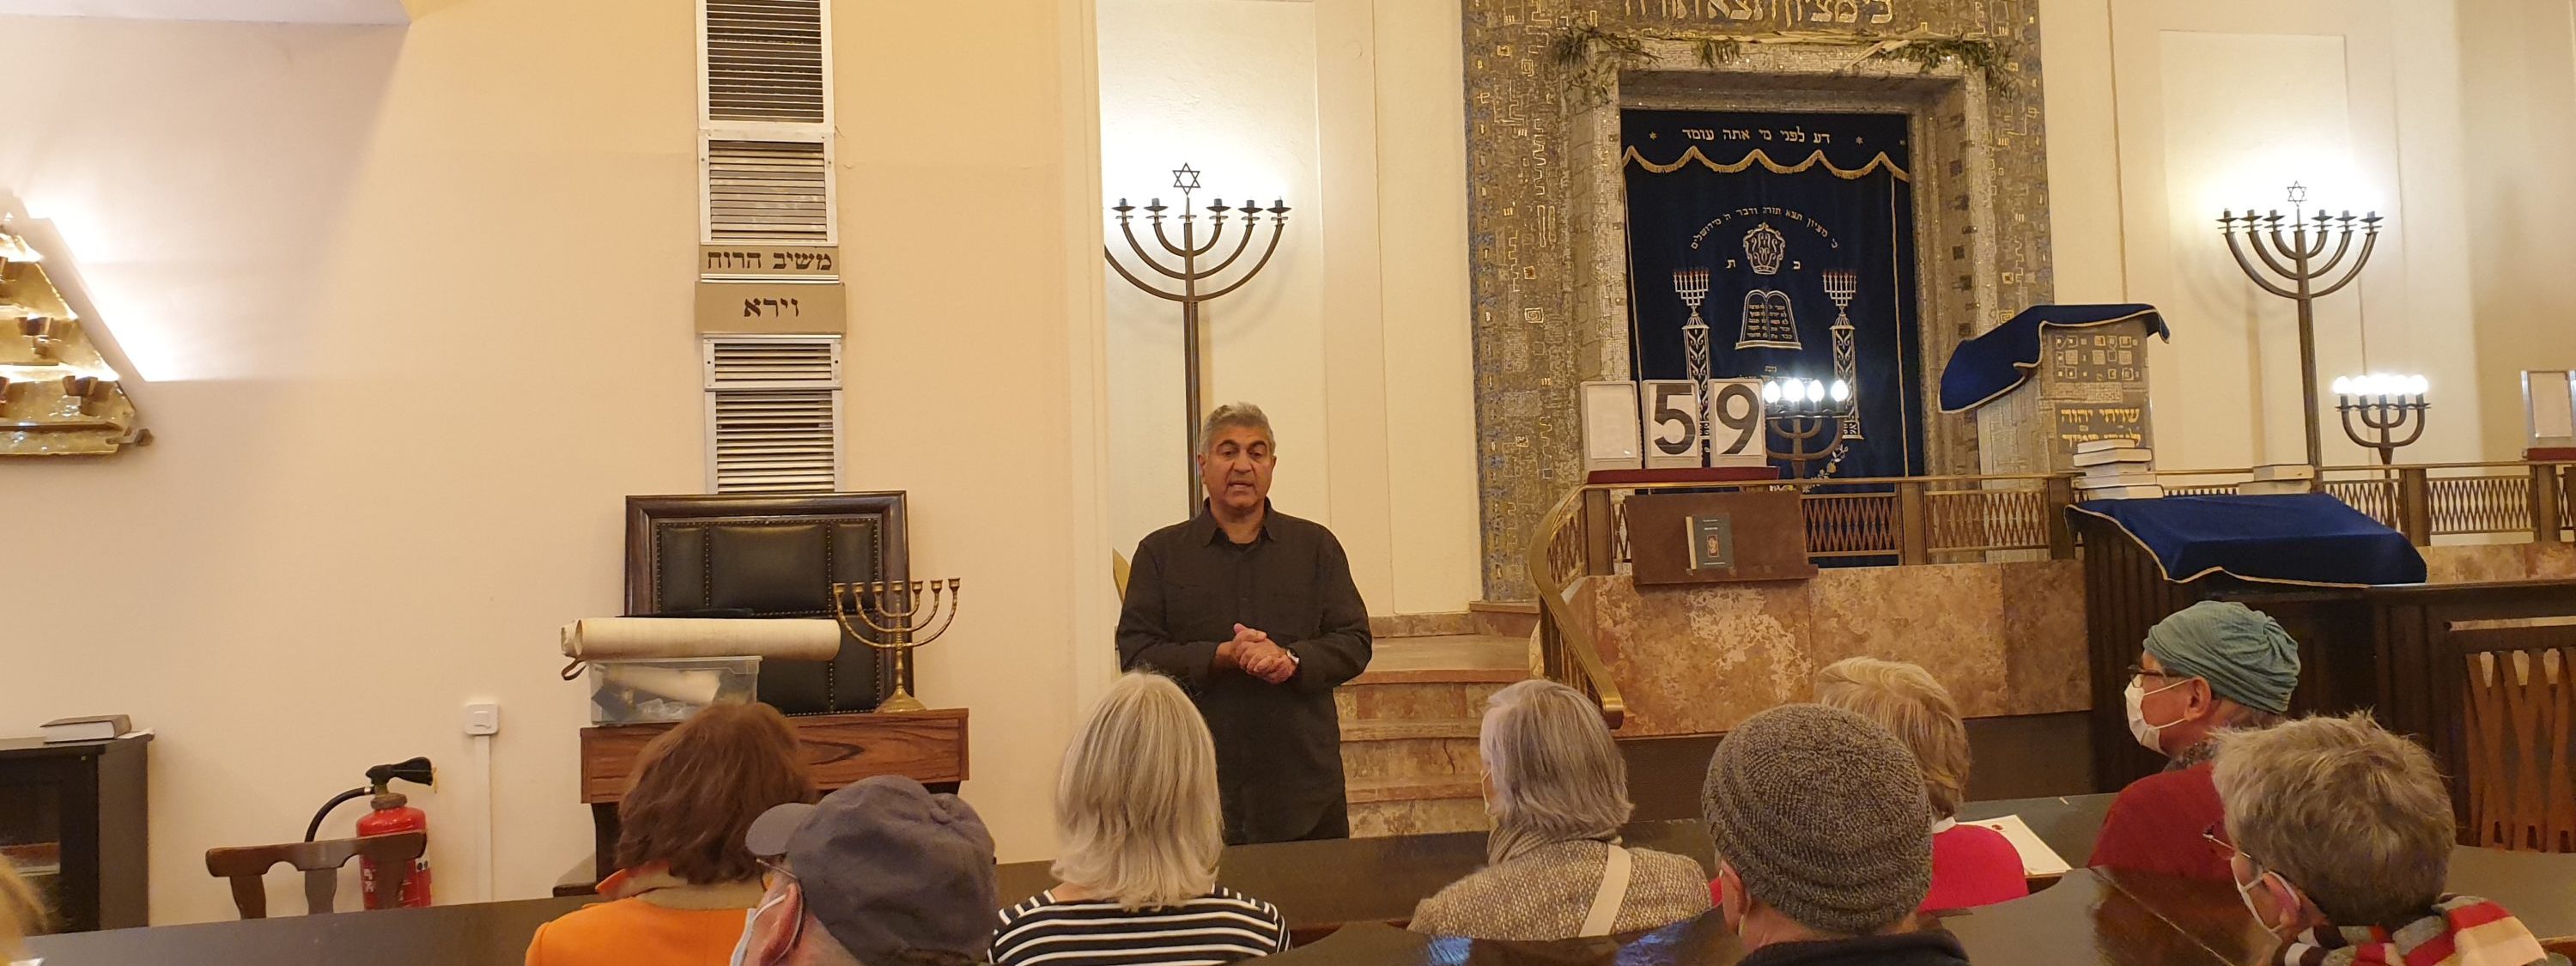 Besuch der Synagoge in Stuttgart mit koscherem Essen